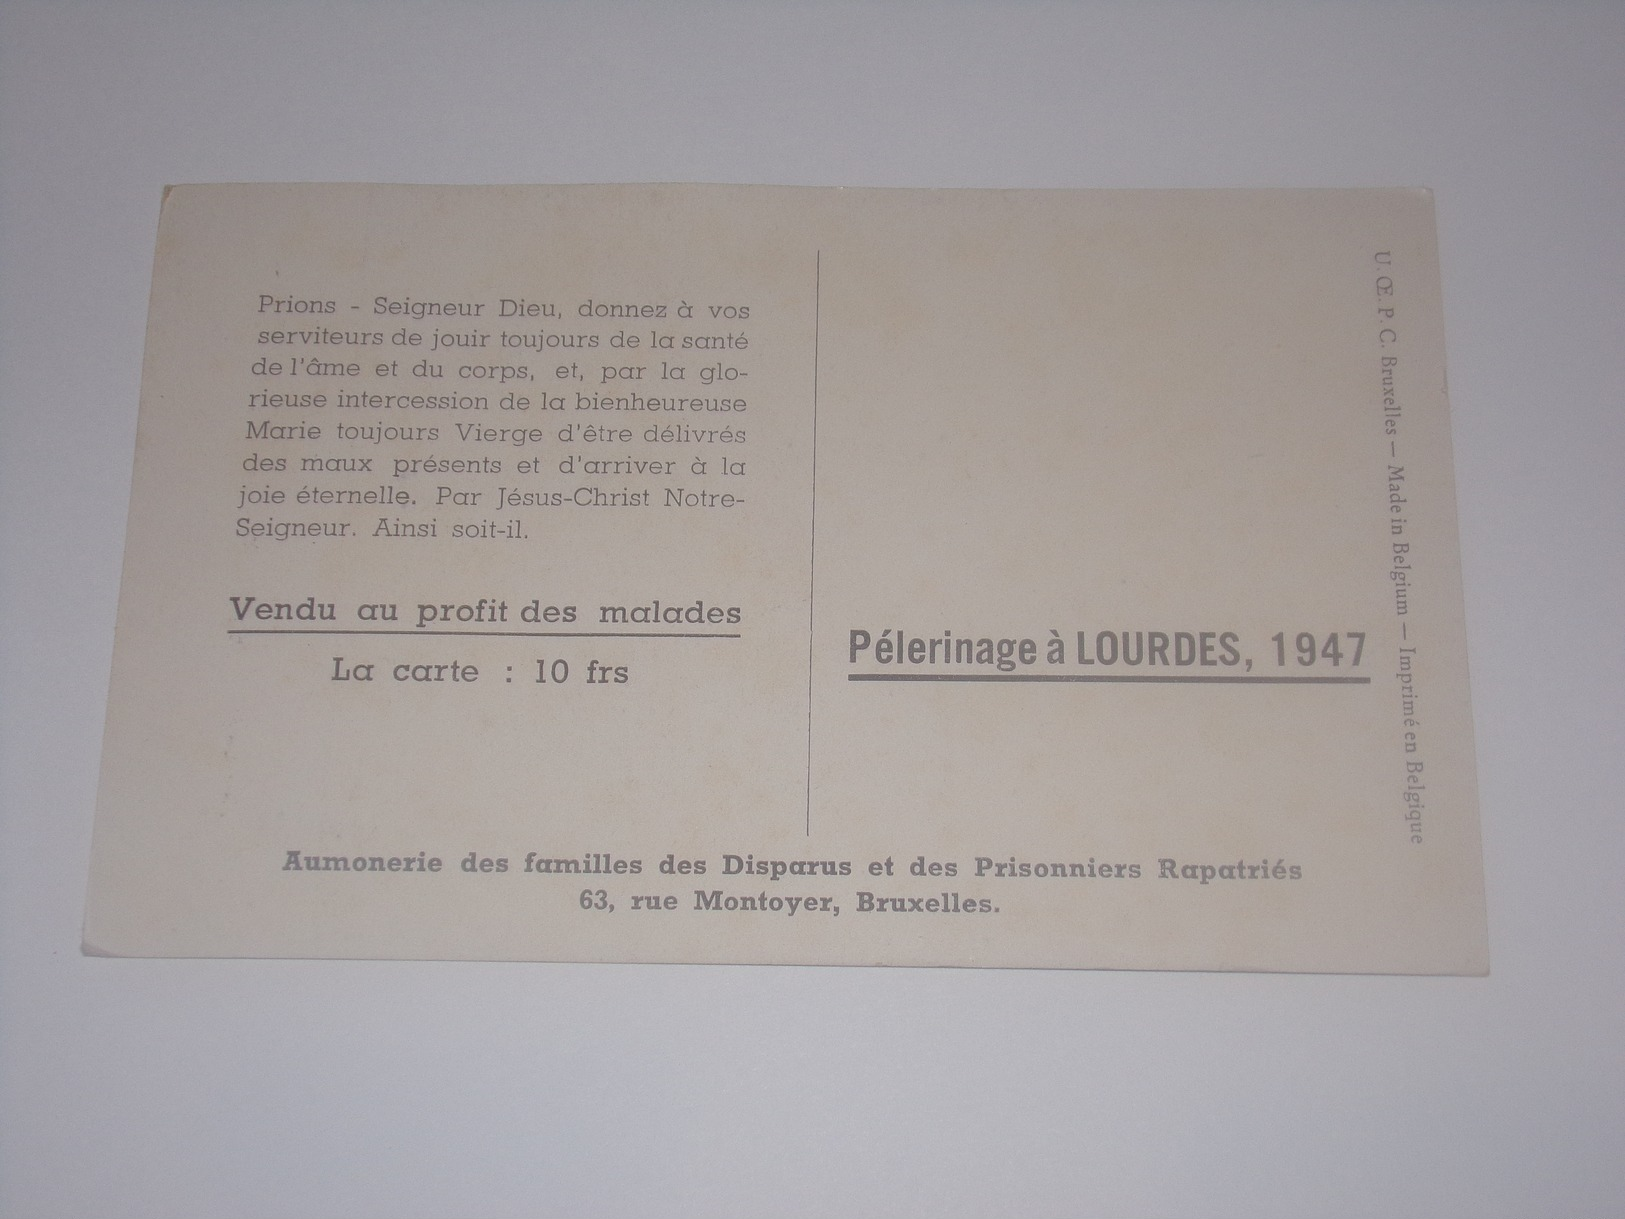 Sainte Véronique Essuie La Face De Jésus.Pélerinage à Lourdes 1947.Aumonerie Familles Des Disparus Et Prisonniers. - Jésus